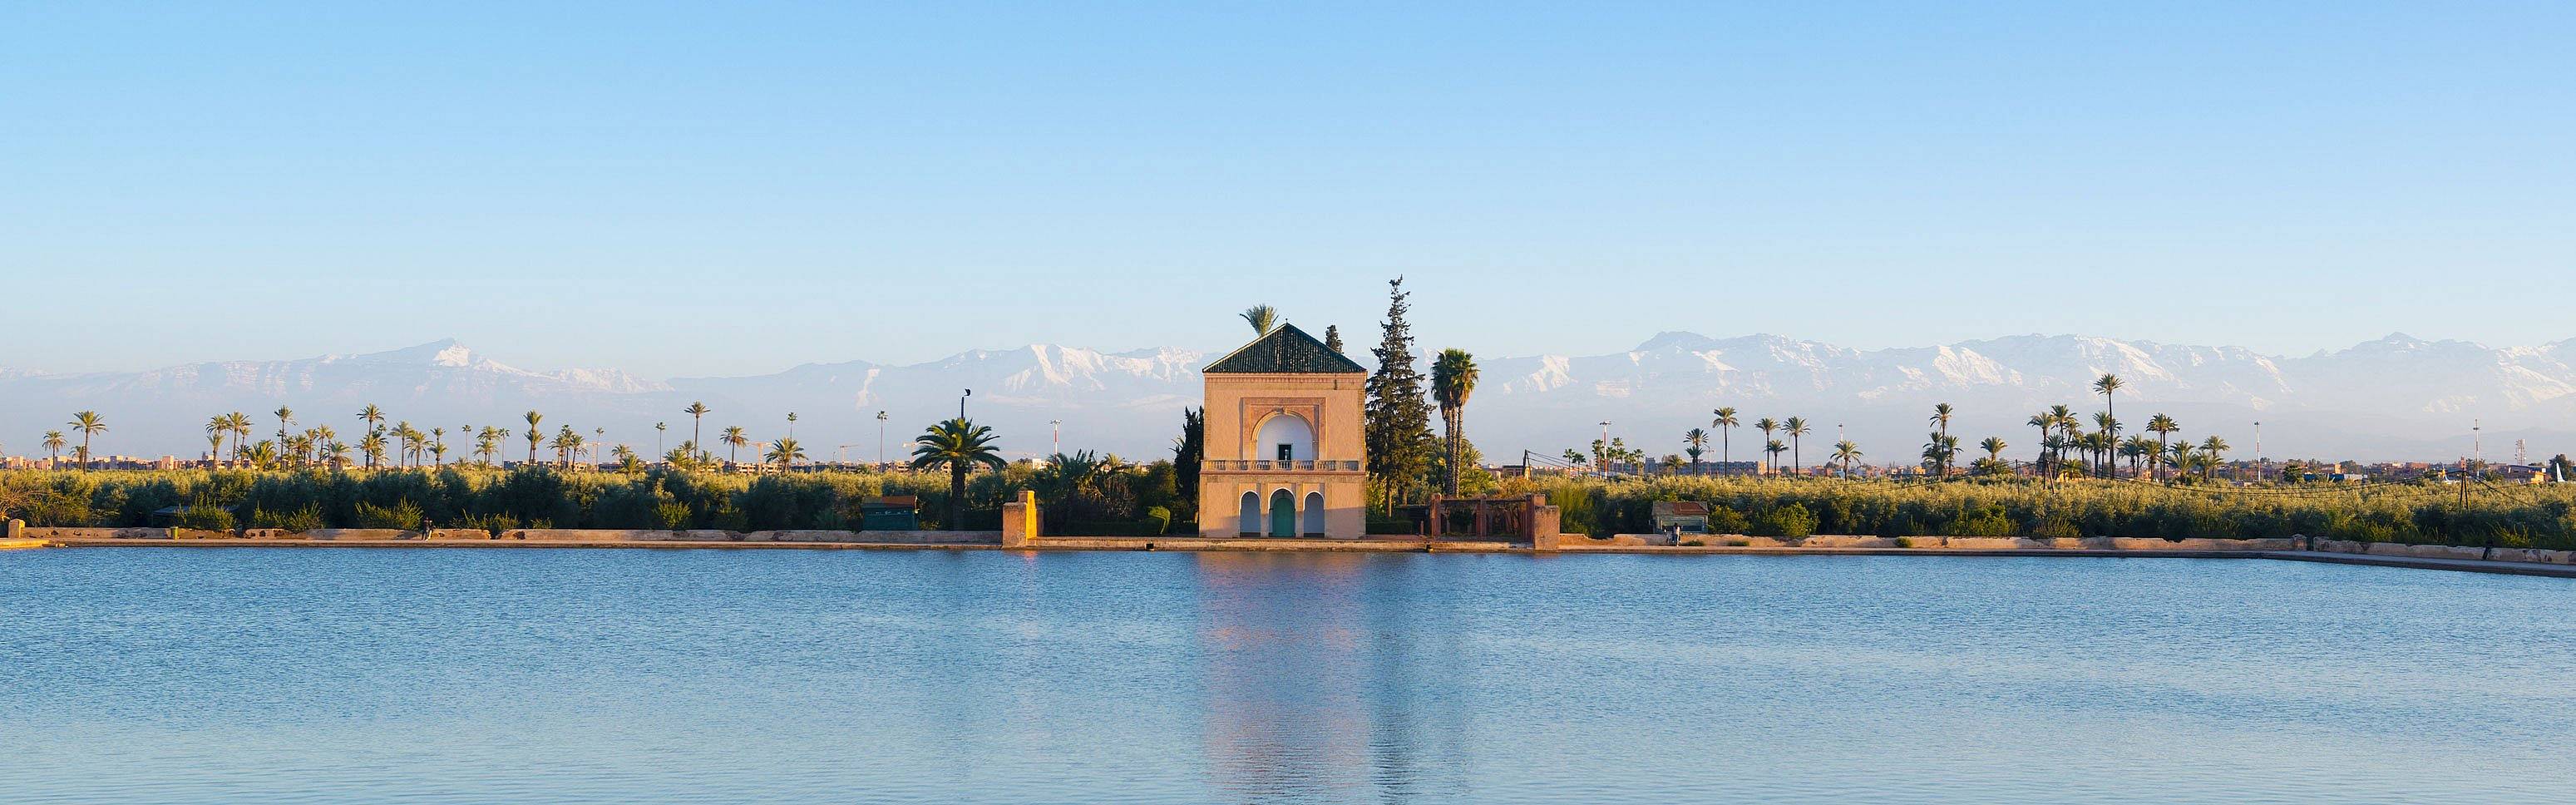 Menara-Gärten und Atlasgebirge, Marrakesch